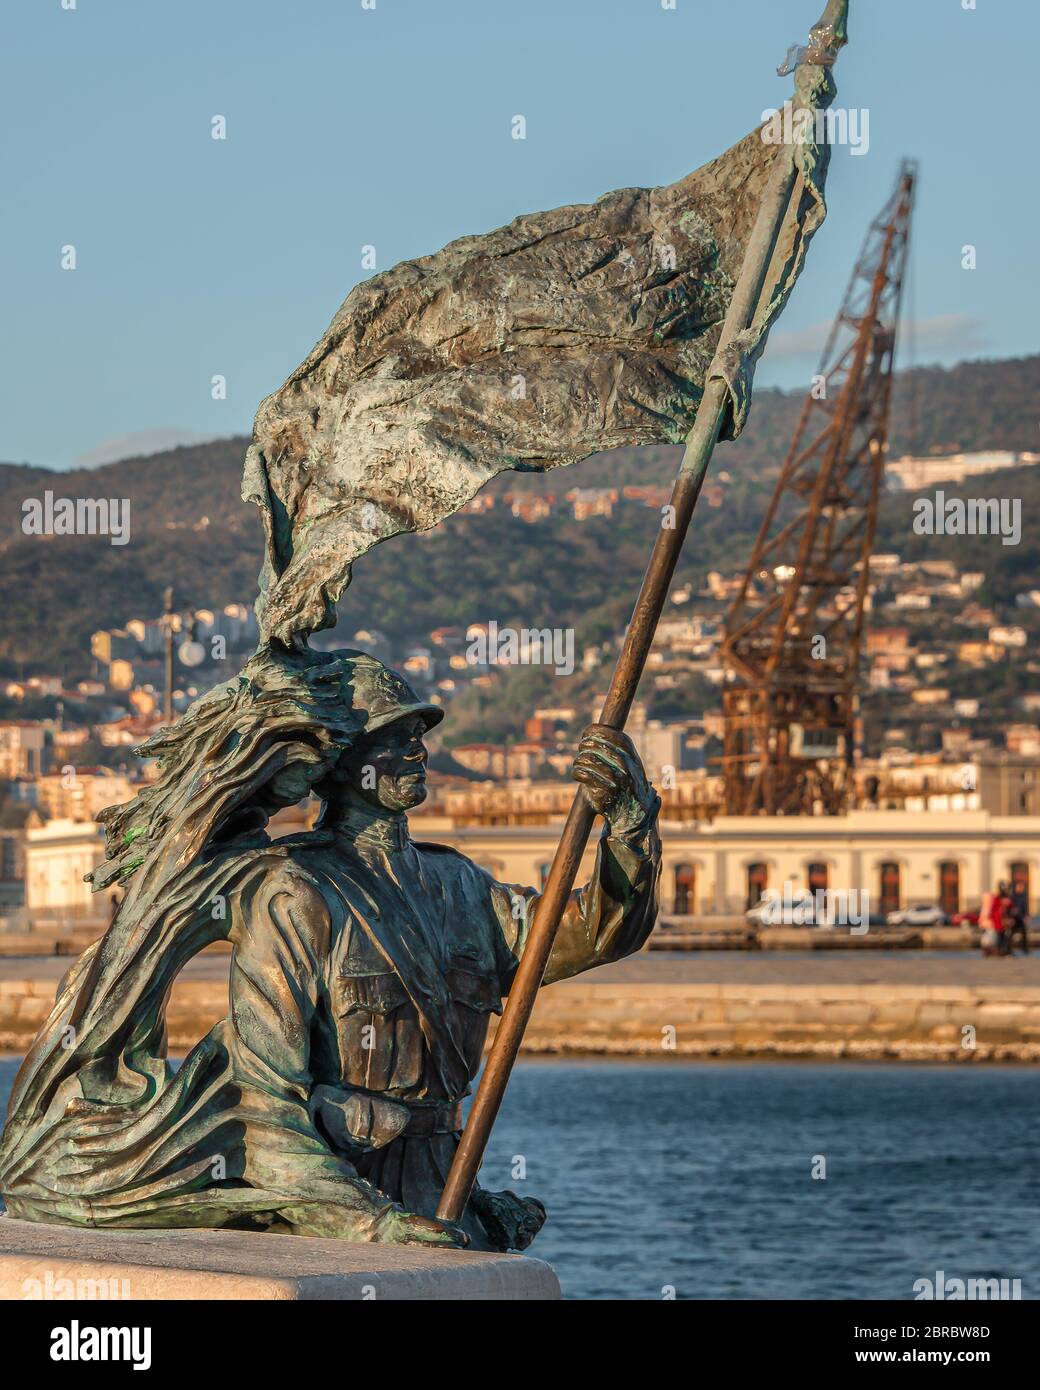 The statue of Bersagliere in trieste in front of hte piazza dell`unità. Bronze of Bersagliere soldier statue with flag in Trieste, near Unita d'Italia Stock Photo